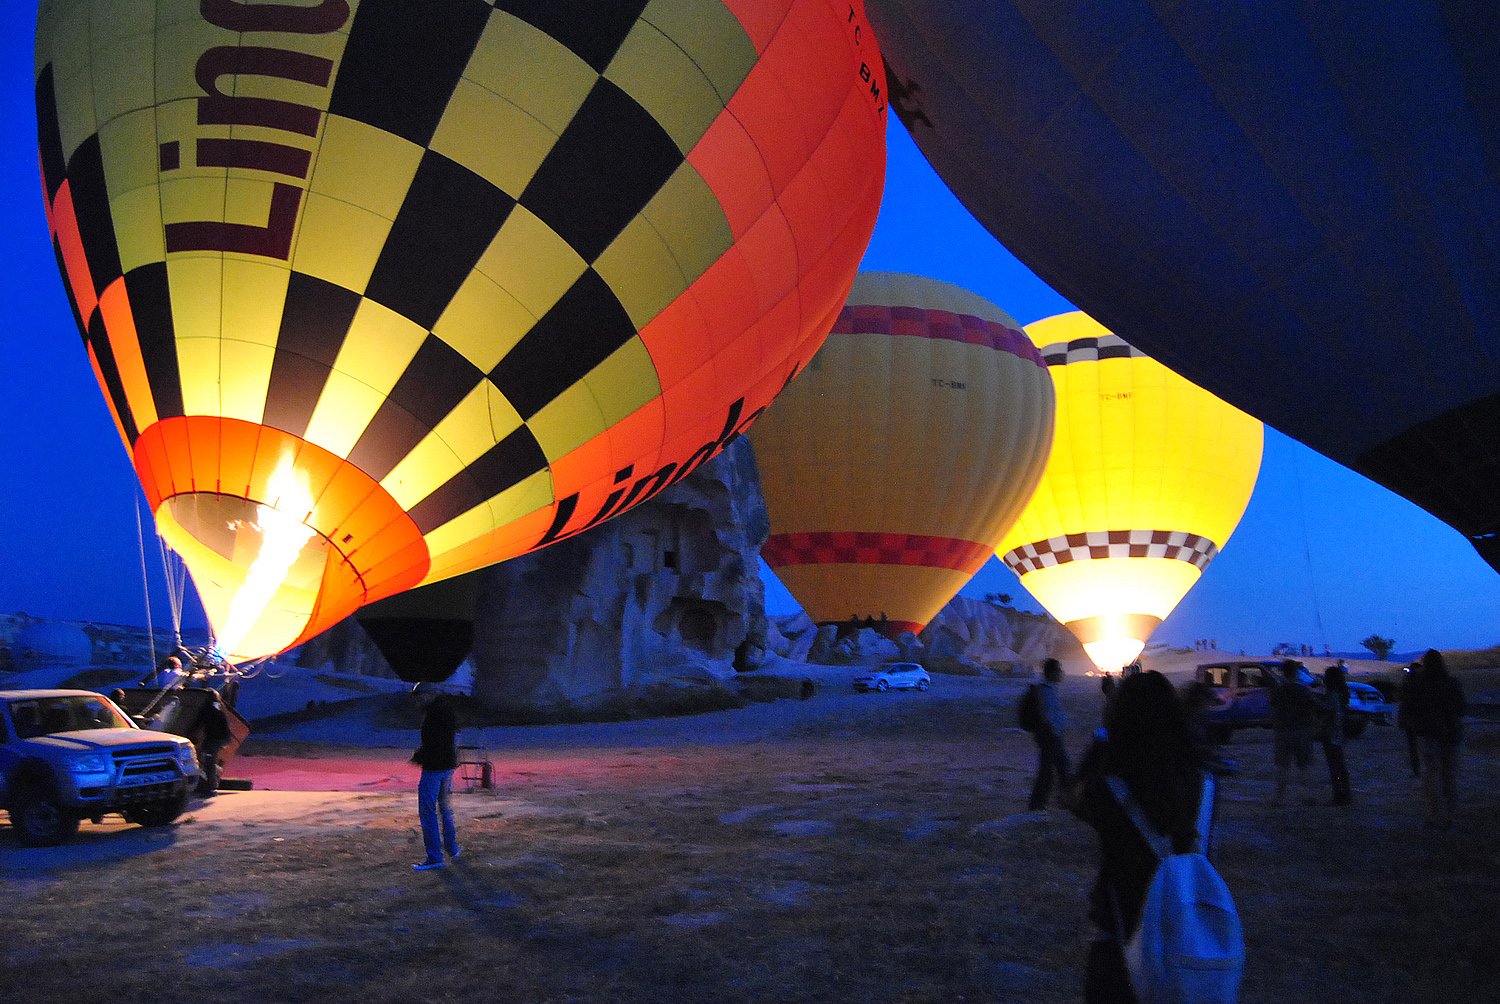 Hot Air Balloons - Cappadocia